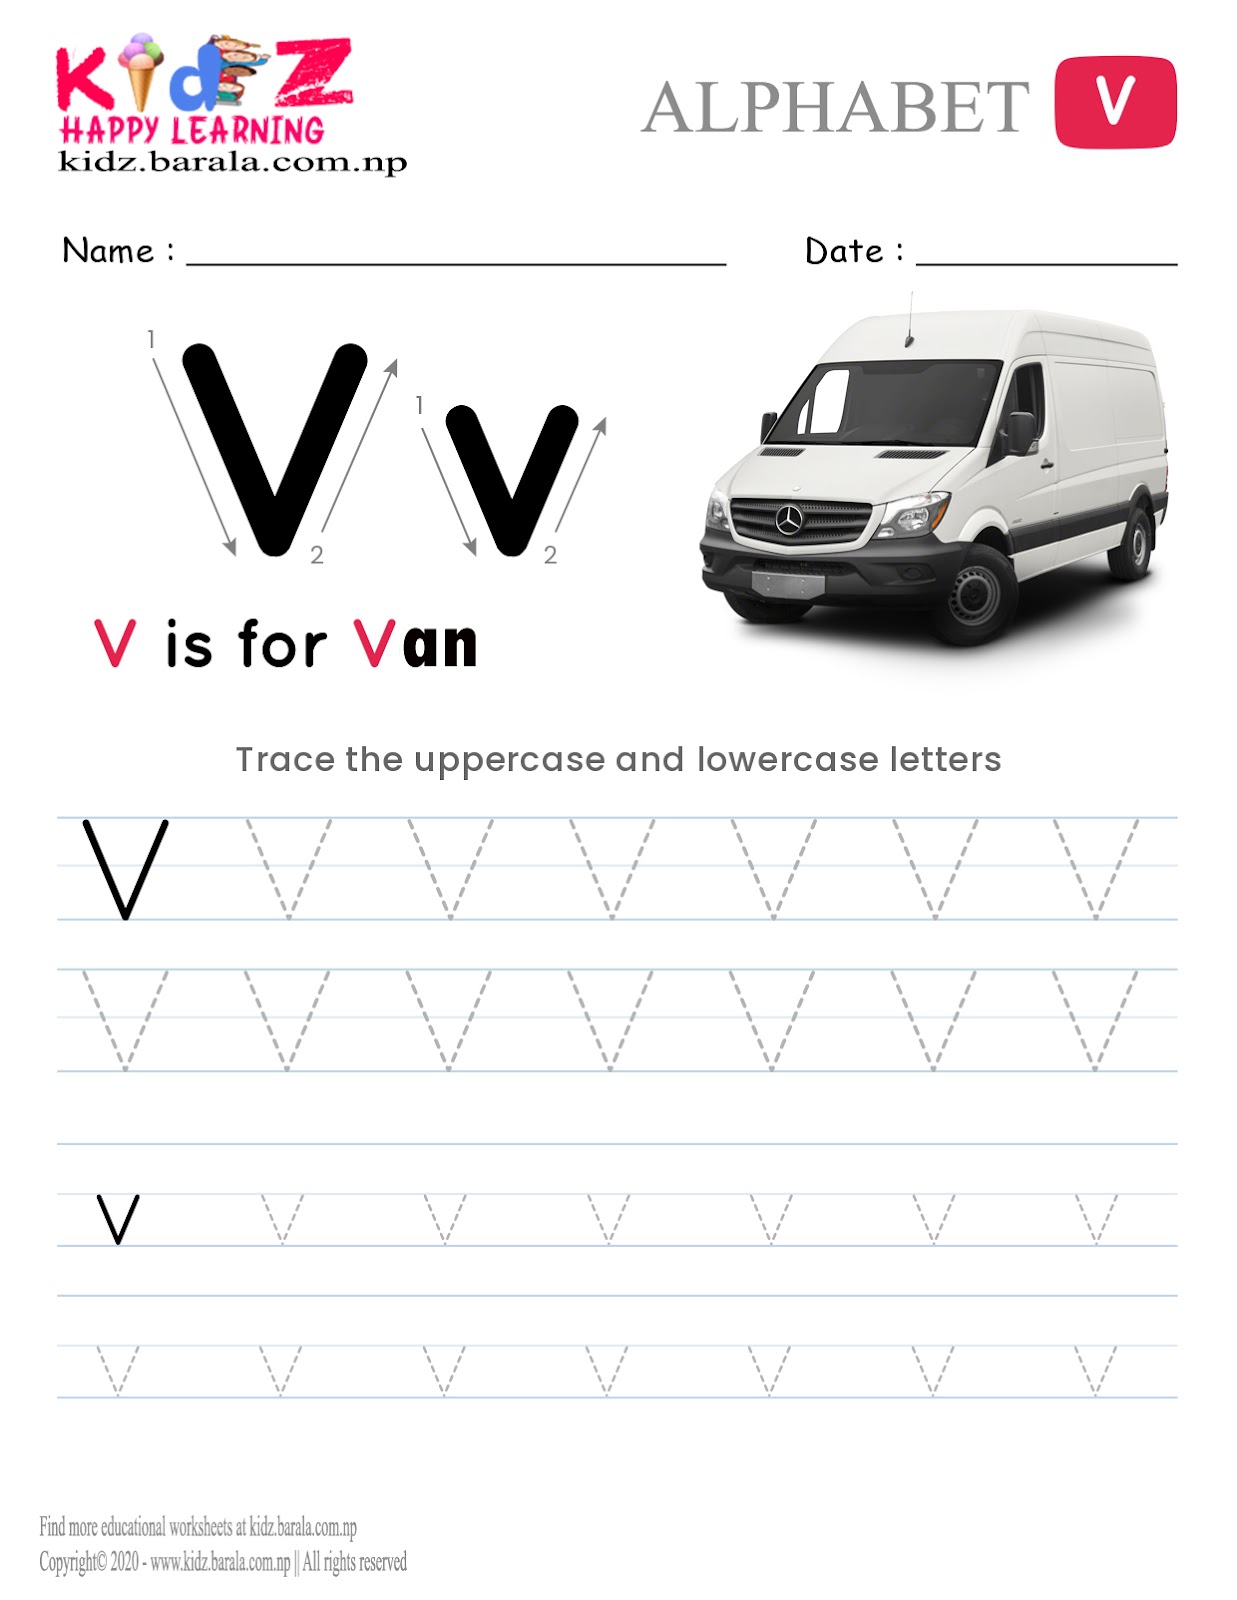 Alphabet V tracing worksheet free download .pdf